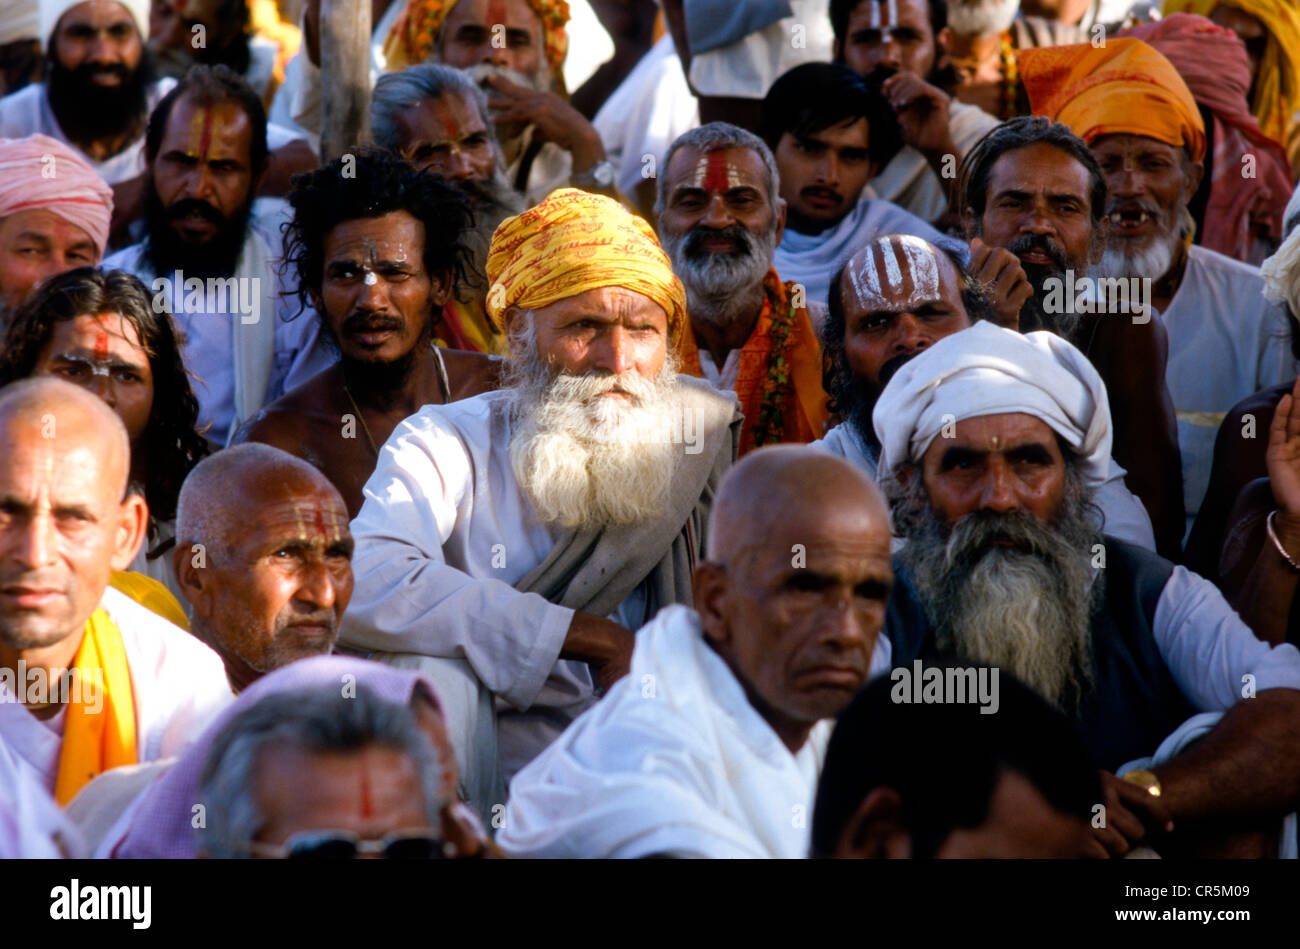 Sadhus gather to follow religious teachings at the Kumbha Mela, Haridwar, Uttarakhand, formerly Uttaranchal, India, Asia Stock Photo